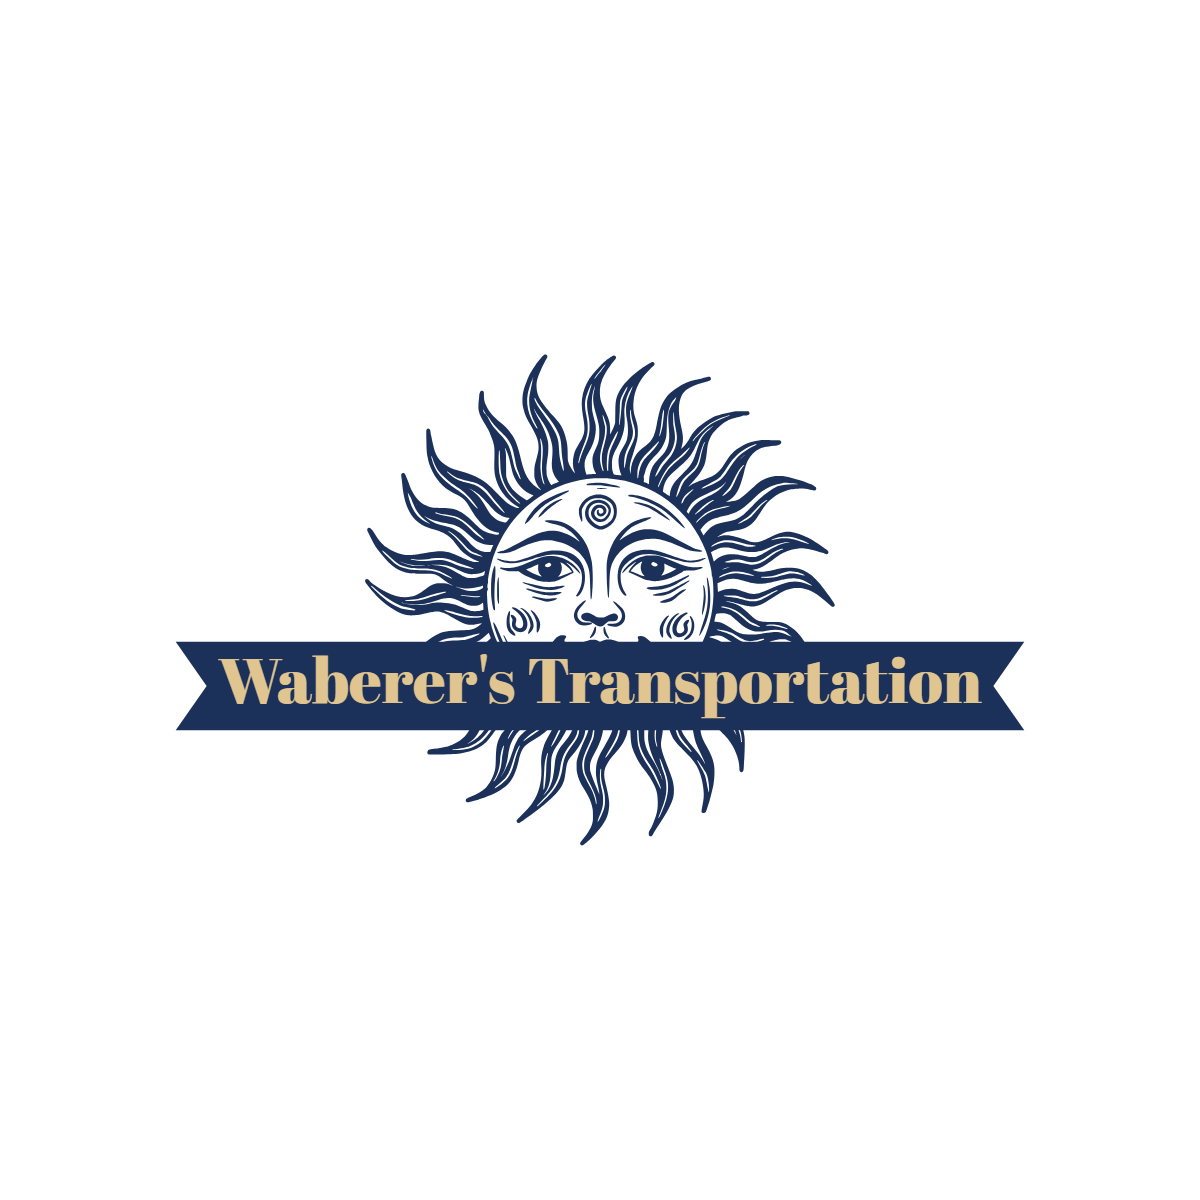 Waberer's Transportation